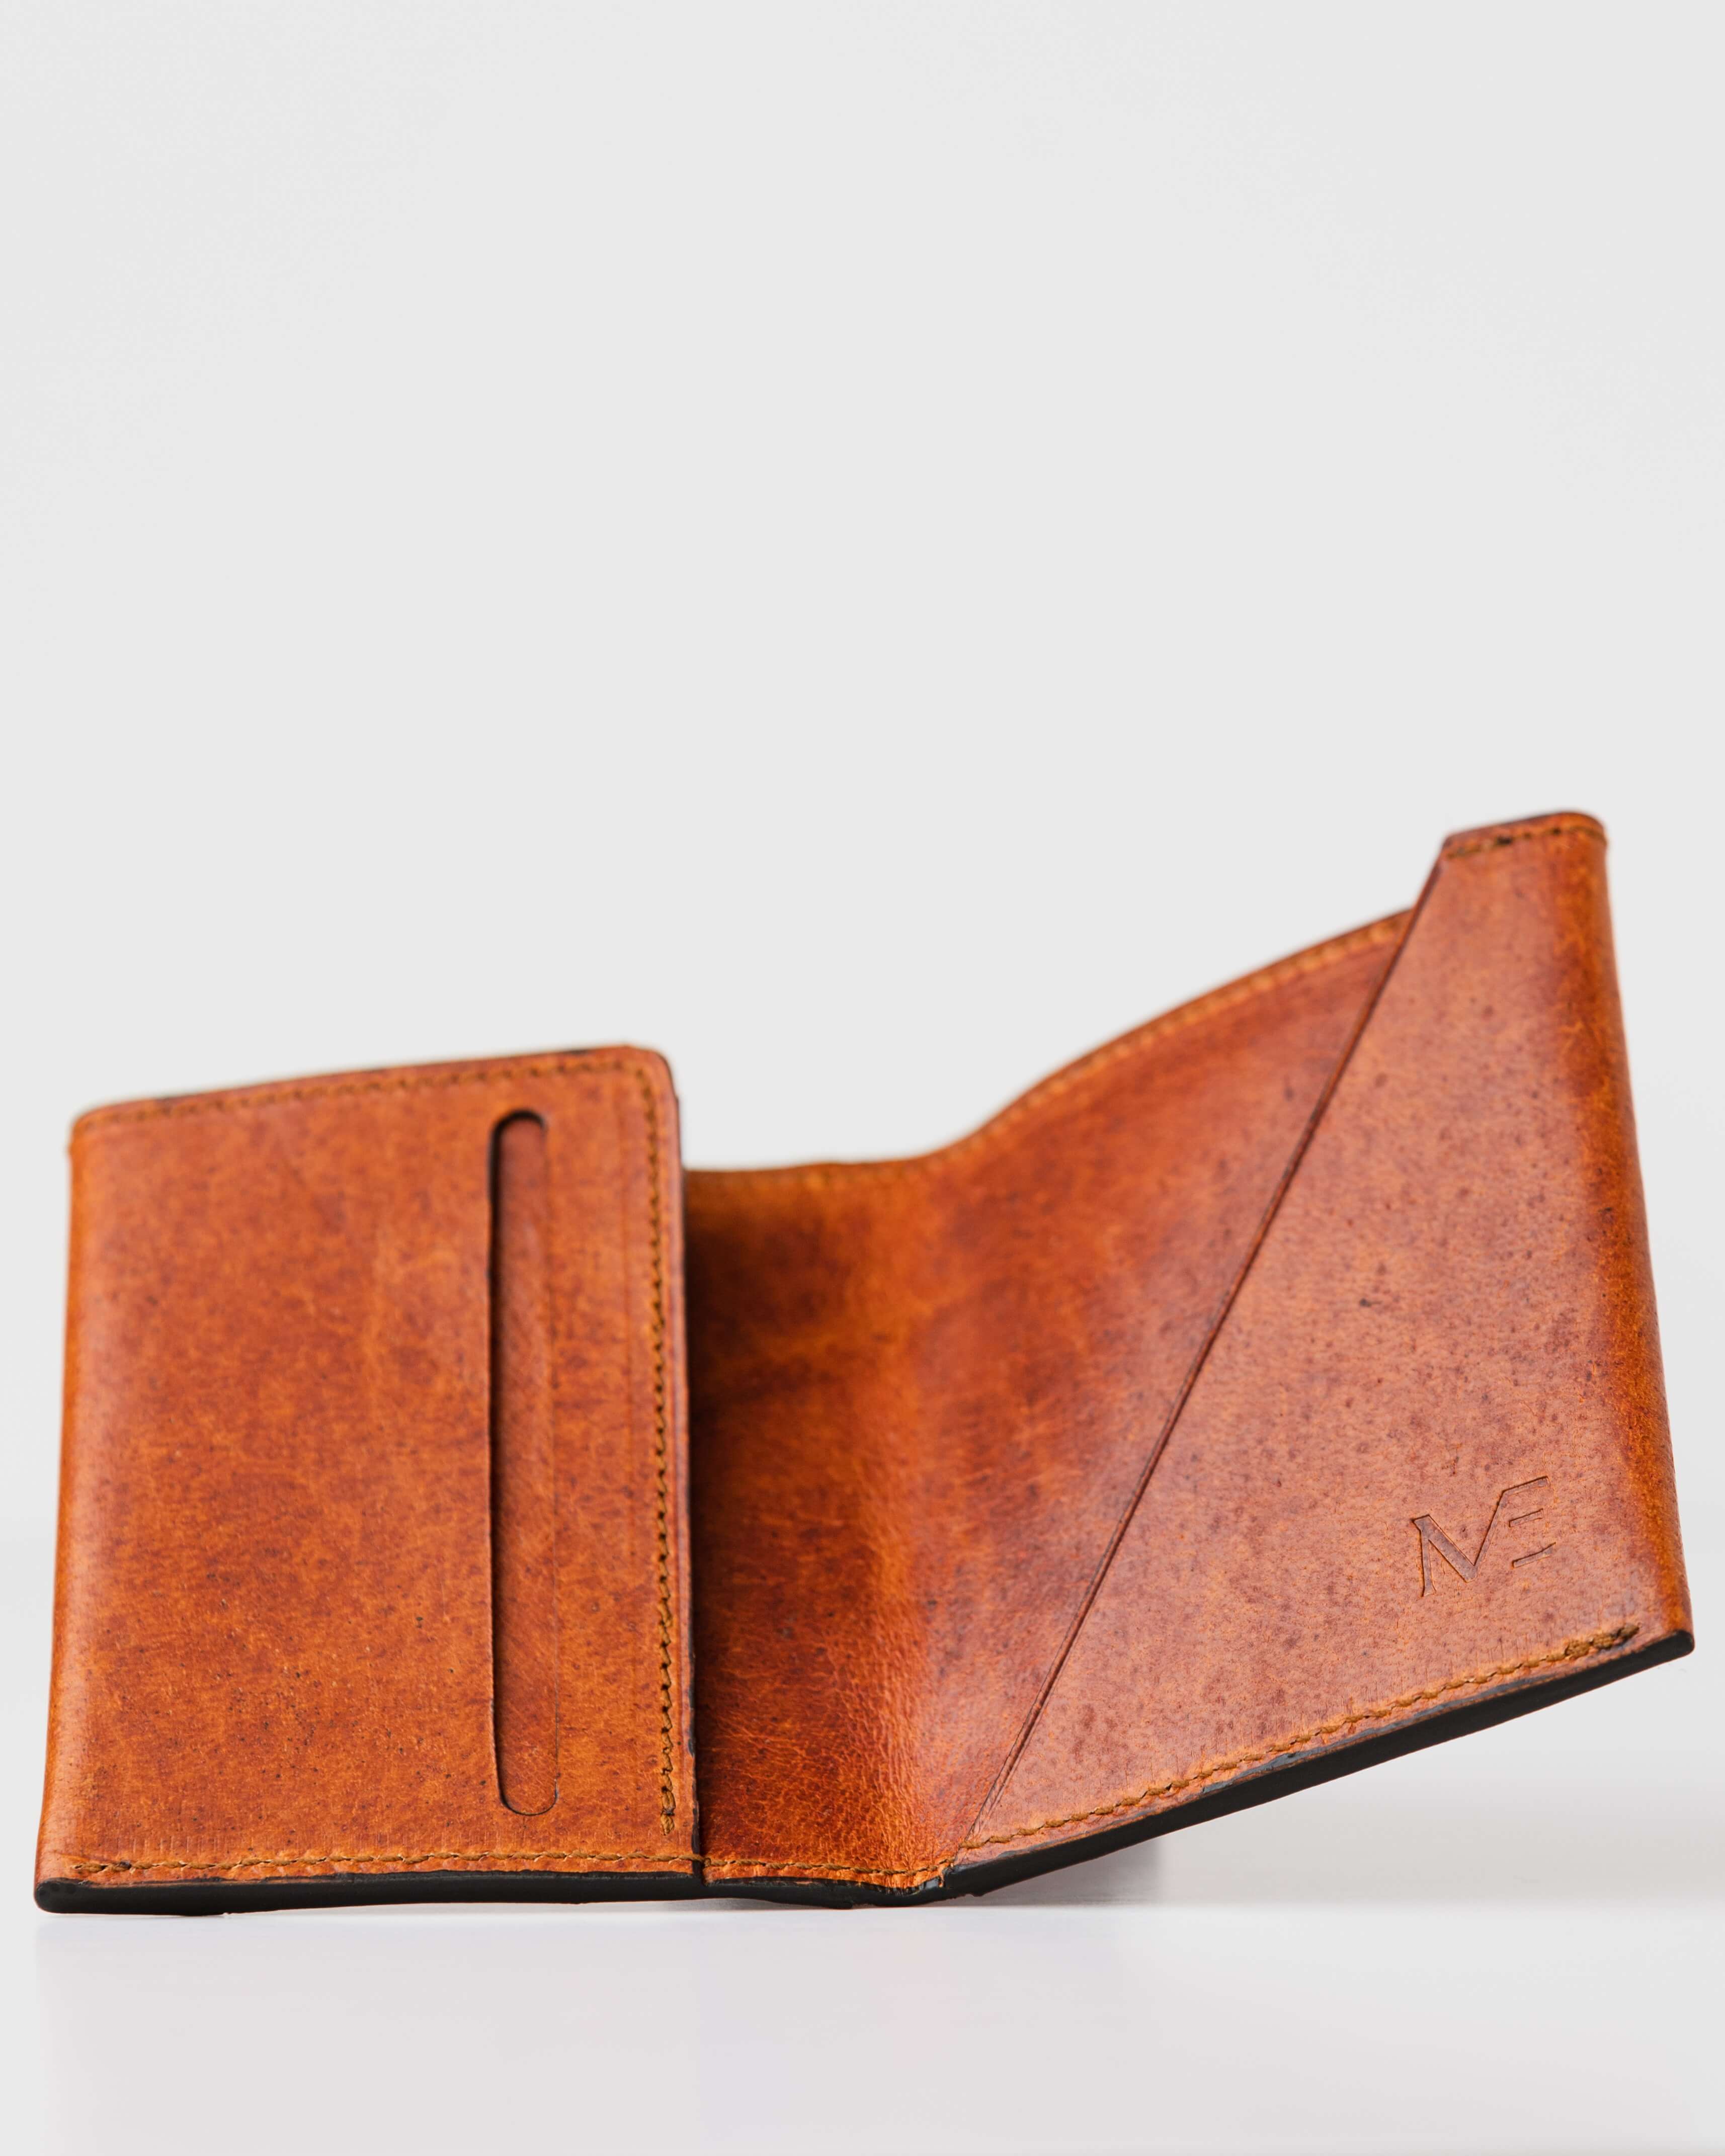 Slim Rustic Tan Deerskin Leather Wallet - Inside View